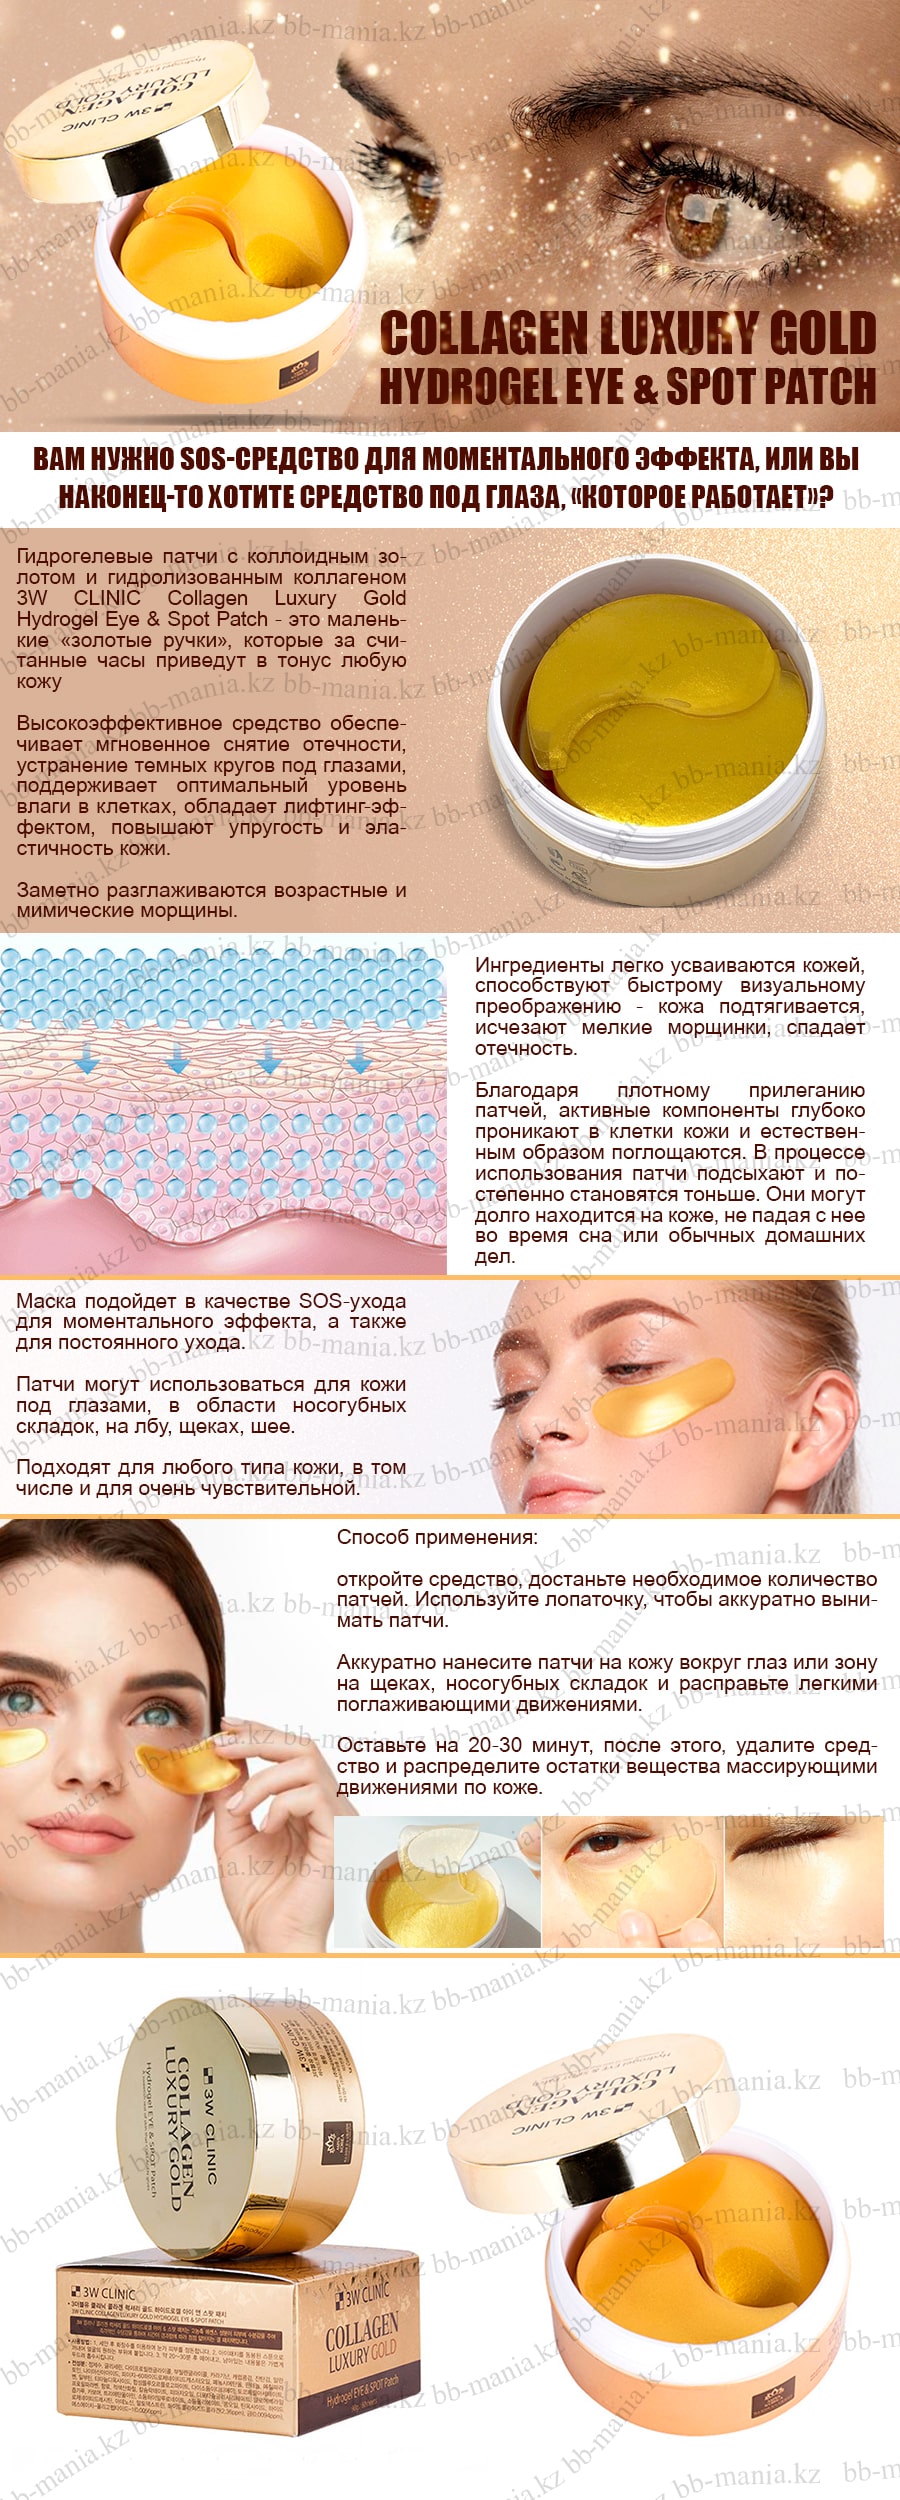 Collagen-Luxury-Gold-Hydrogel-Eye-&-Spot-Patch-[3W-CLINIC]-min